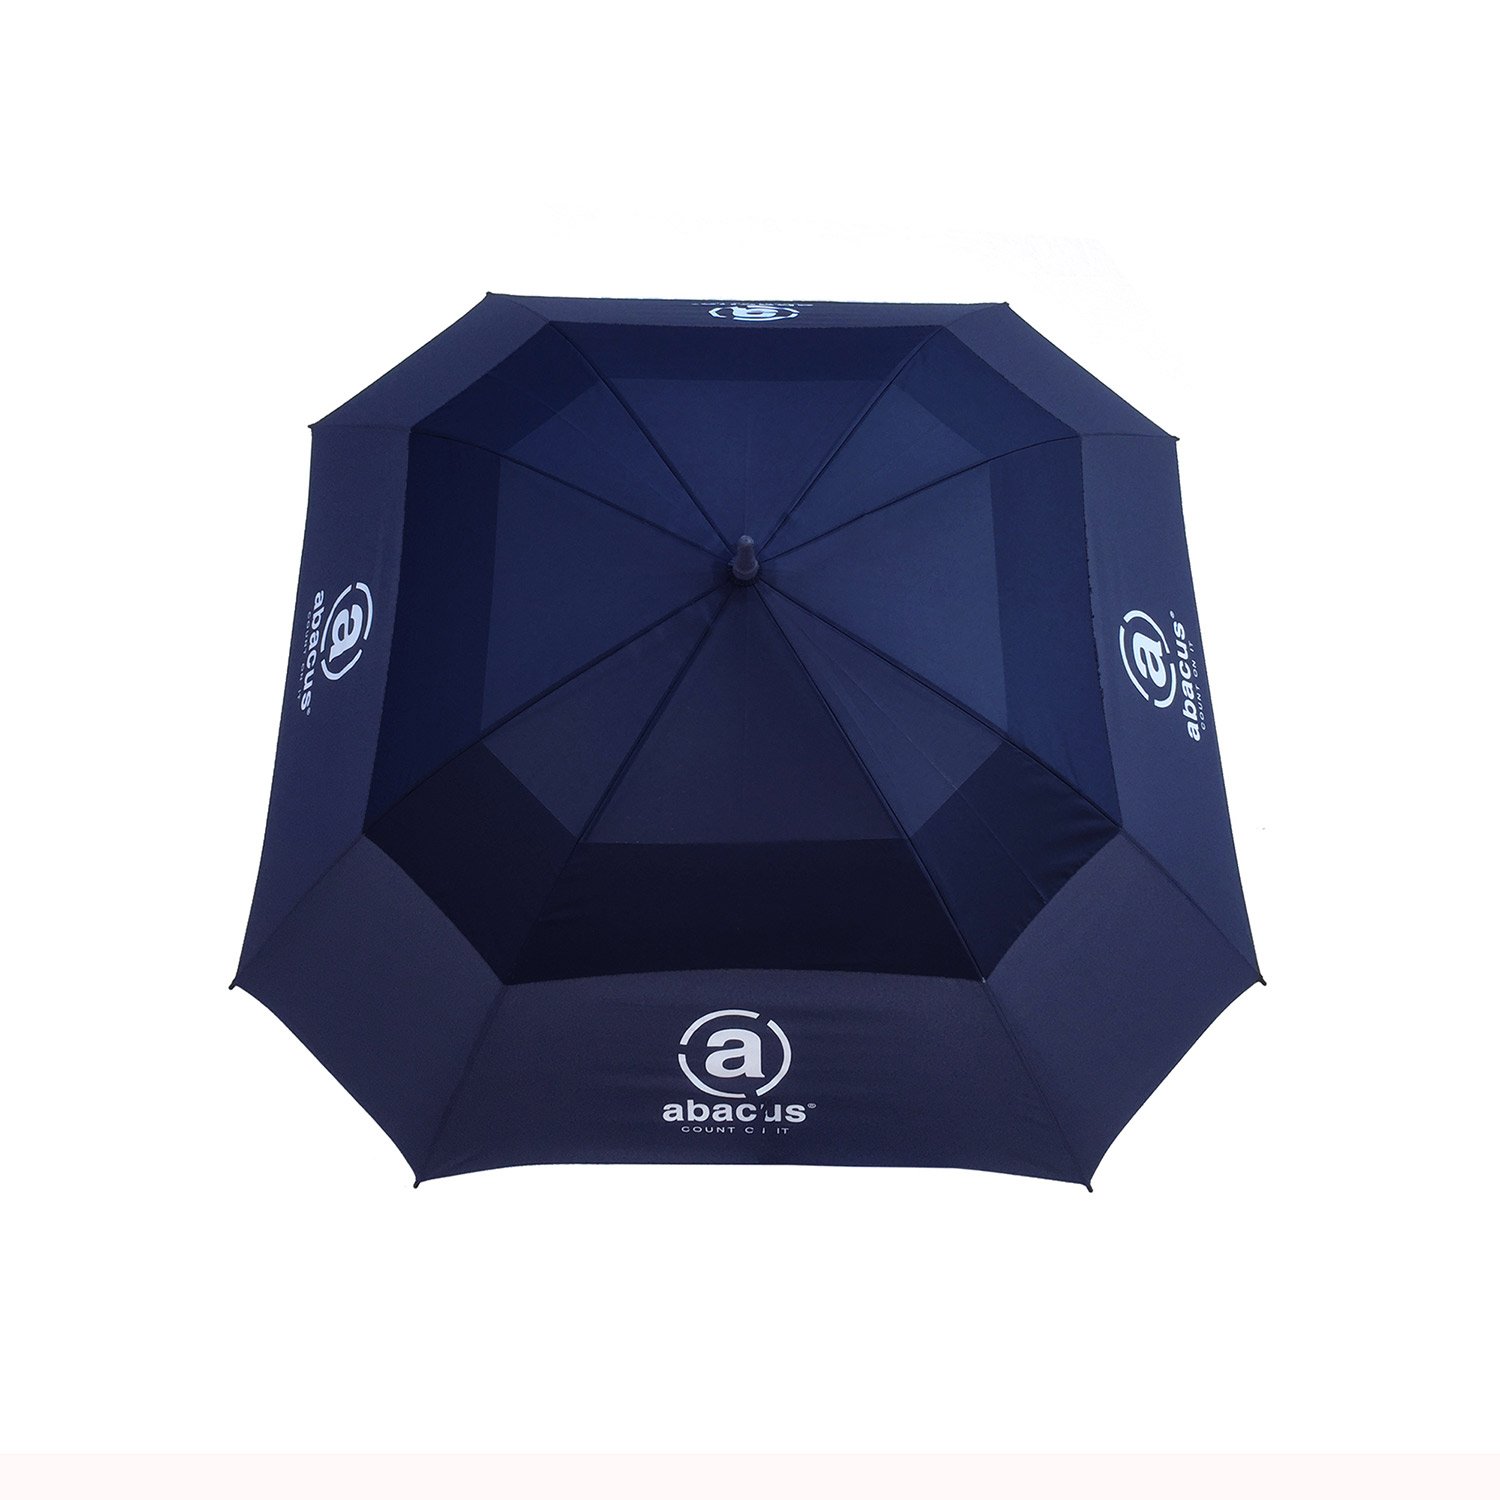 Square Umbrella Blue